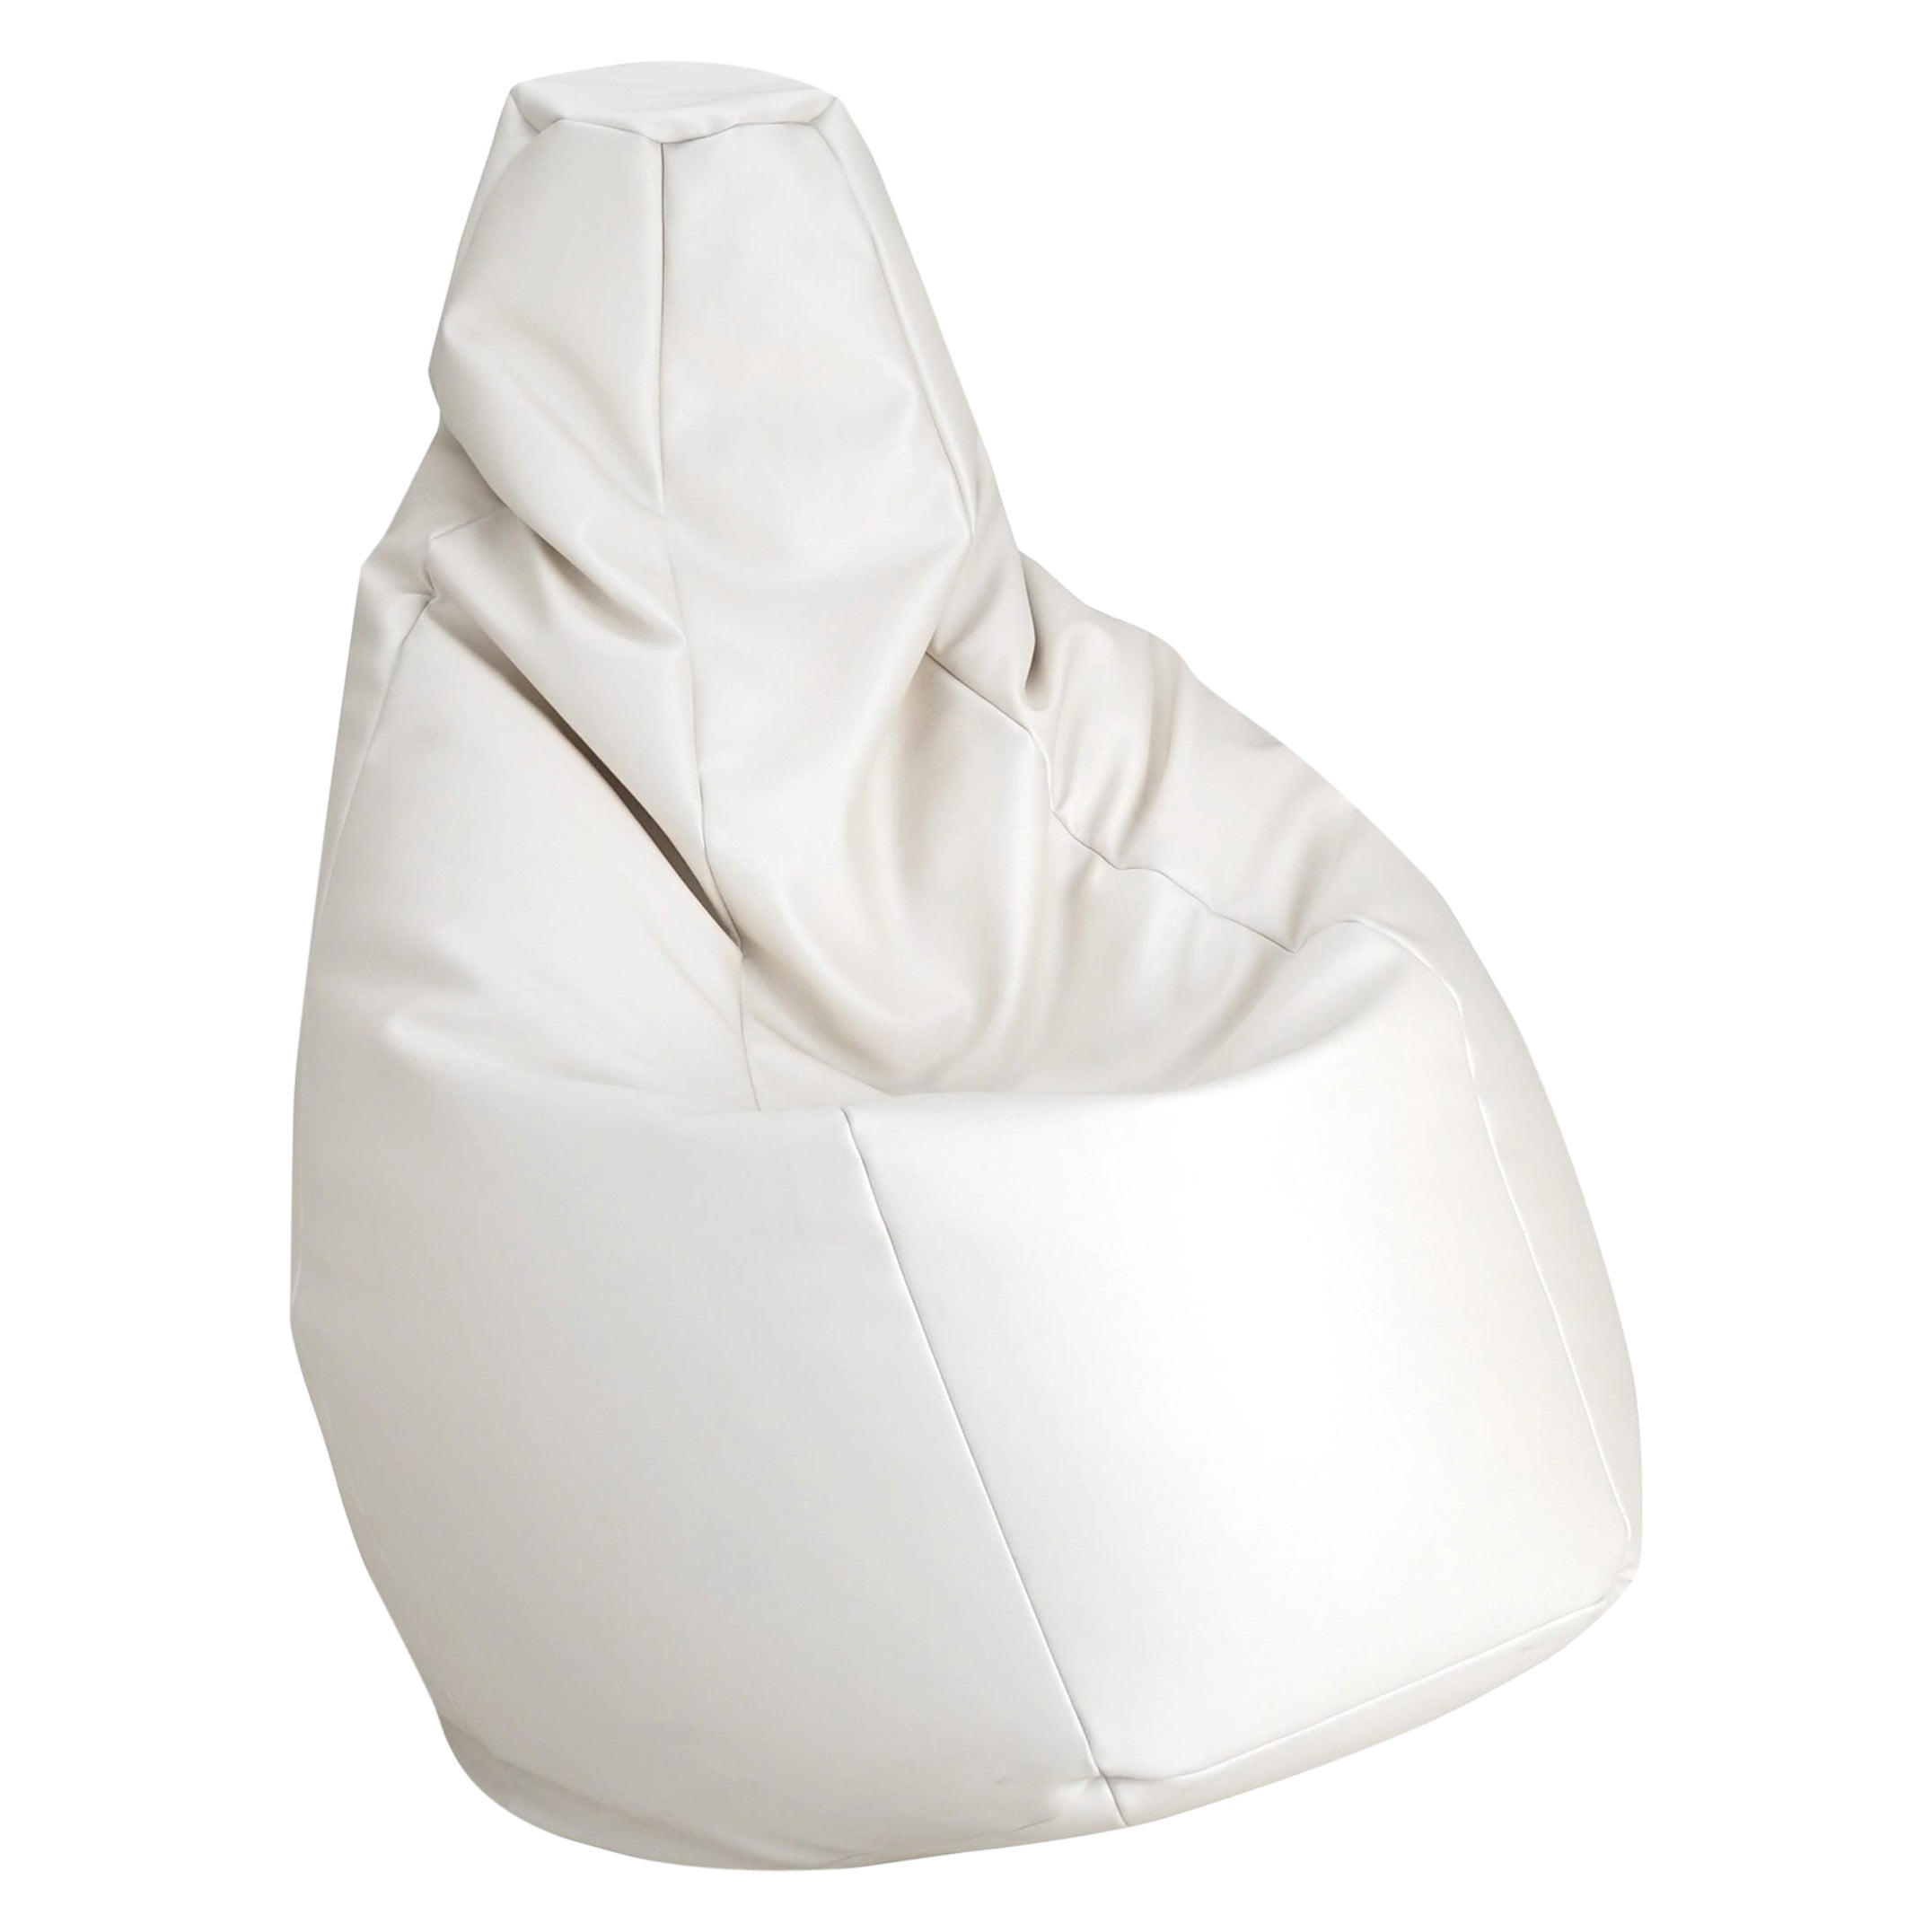 Zanotta Large Sacco in White Vip Fabric by Gatti, Paolini, Teodoro For Sale